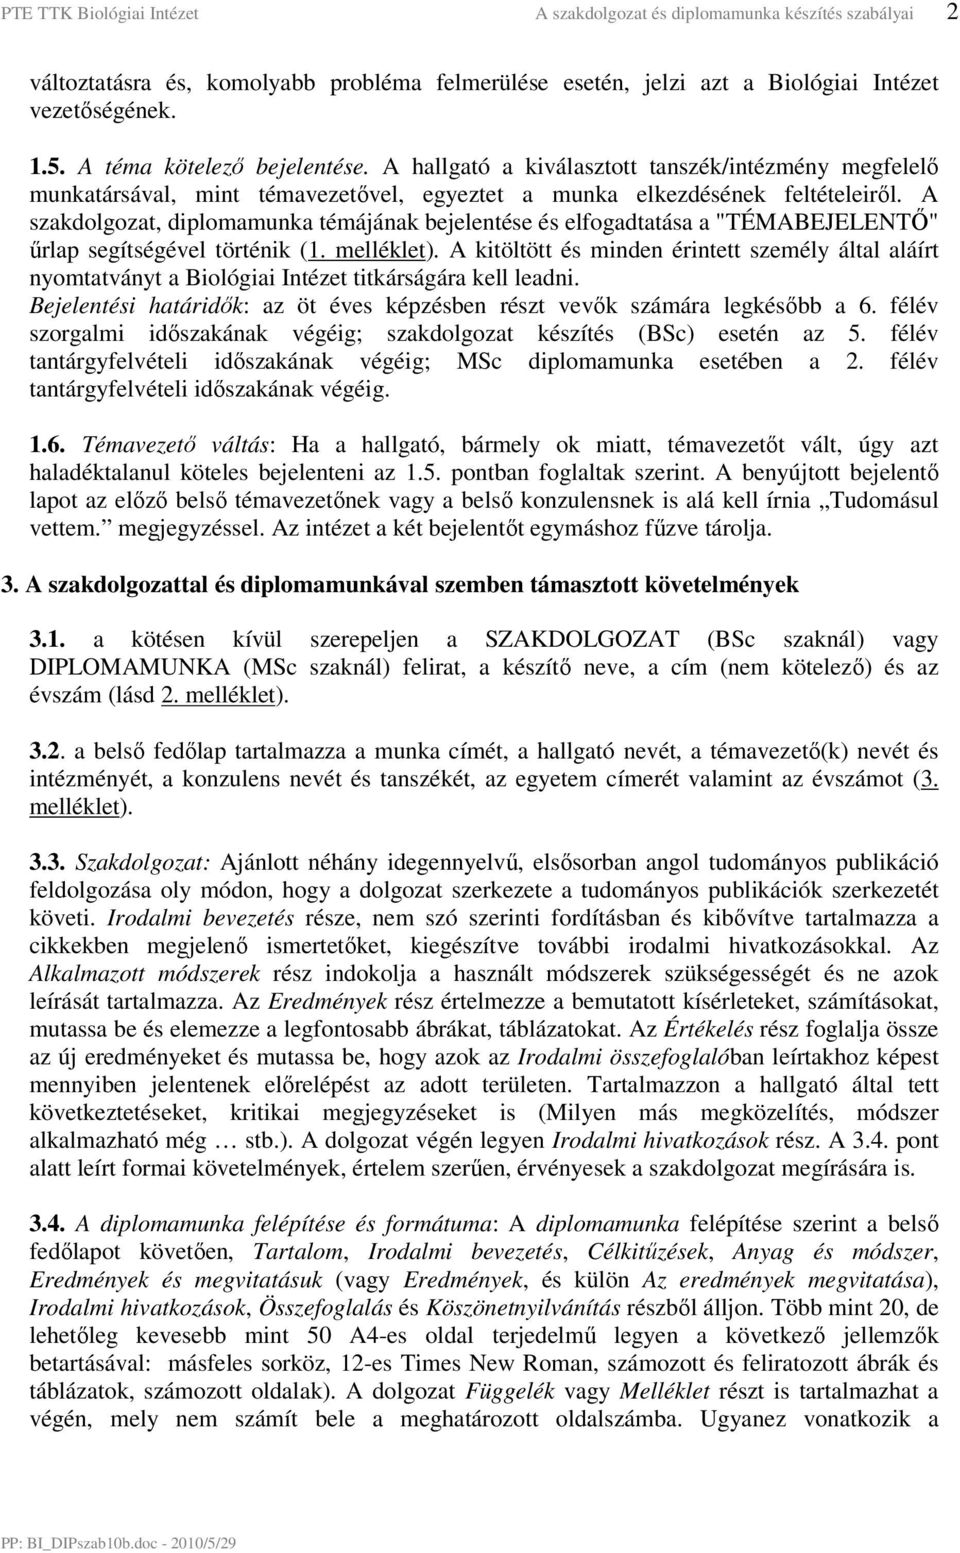 A szakdolgozat, diplomamunka témájának bejelentése és elfogadtatása a "TÉMABEJELENTİ" őrlap segítségével történik (1. melléklet).